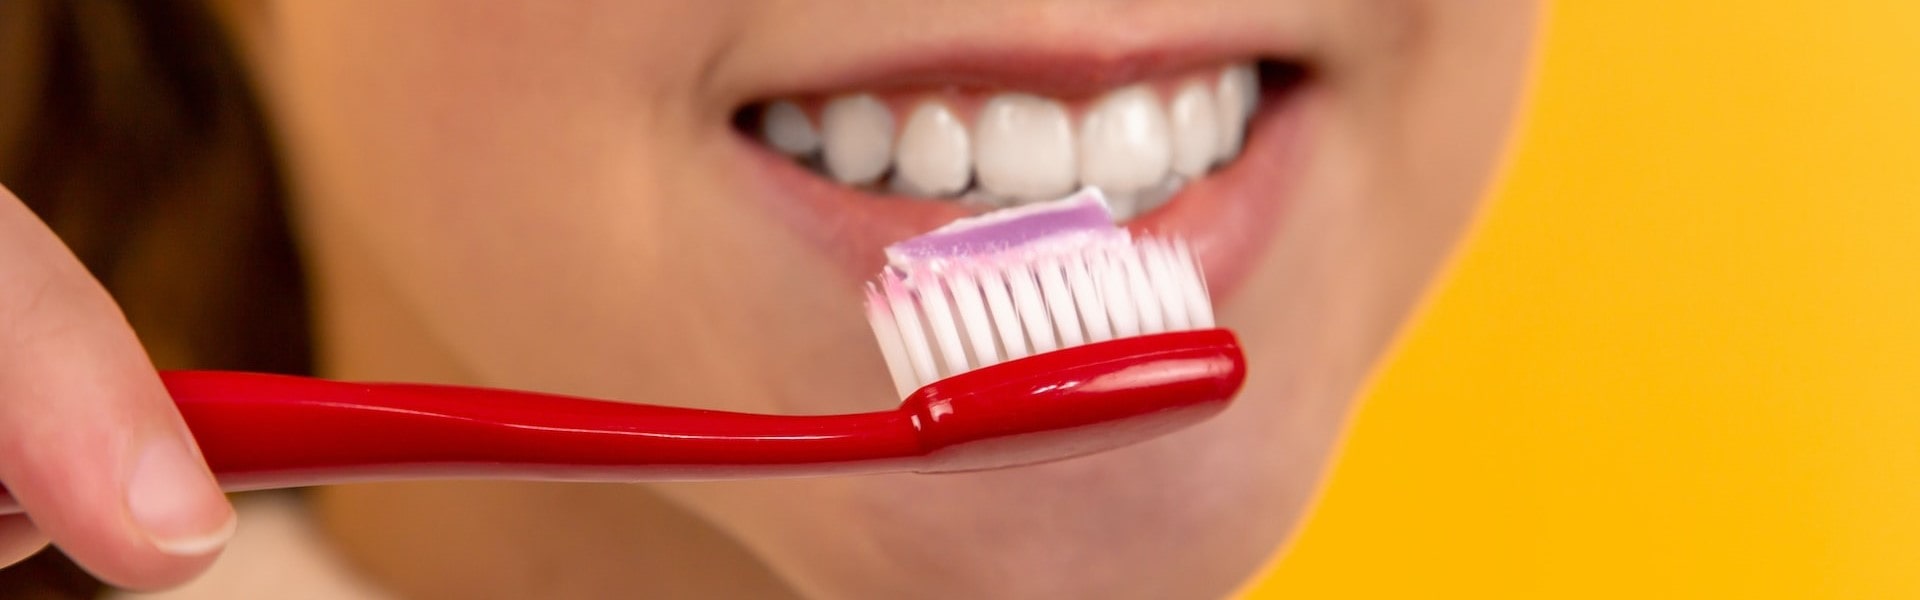 Чистить зубы мылом. Профилактика заболеваний зубов. Что называют зубом. Стоматология красивые фото. Профилактика заболеваний полости рта и зубов.